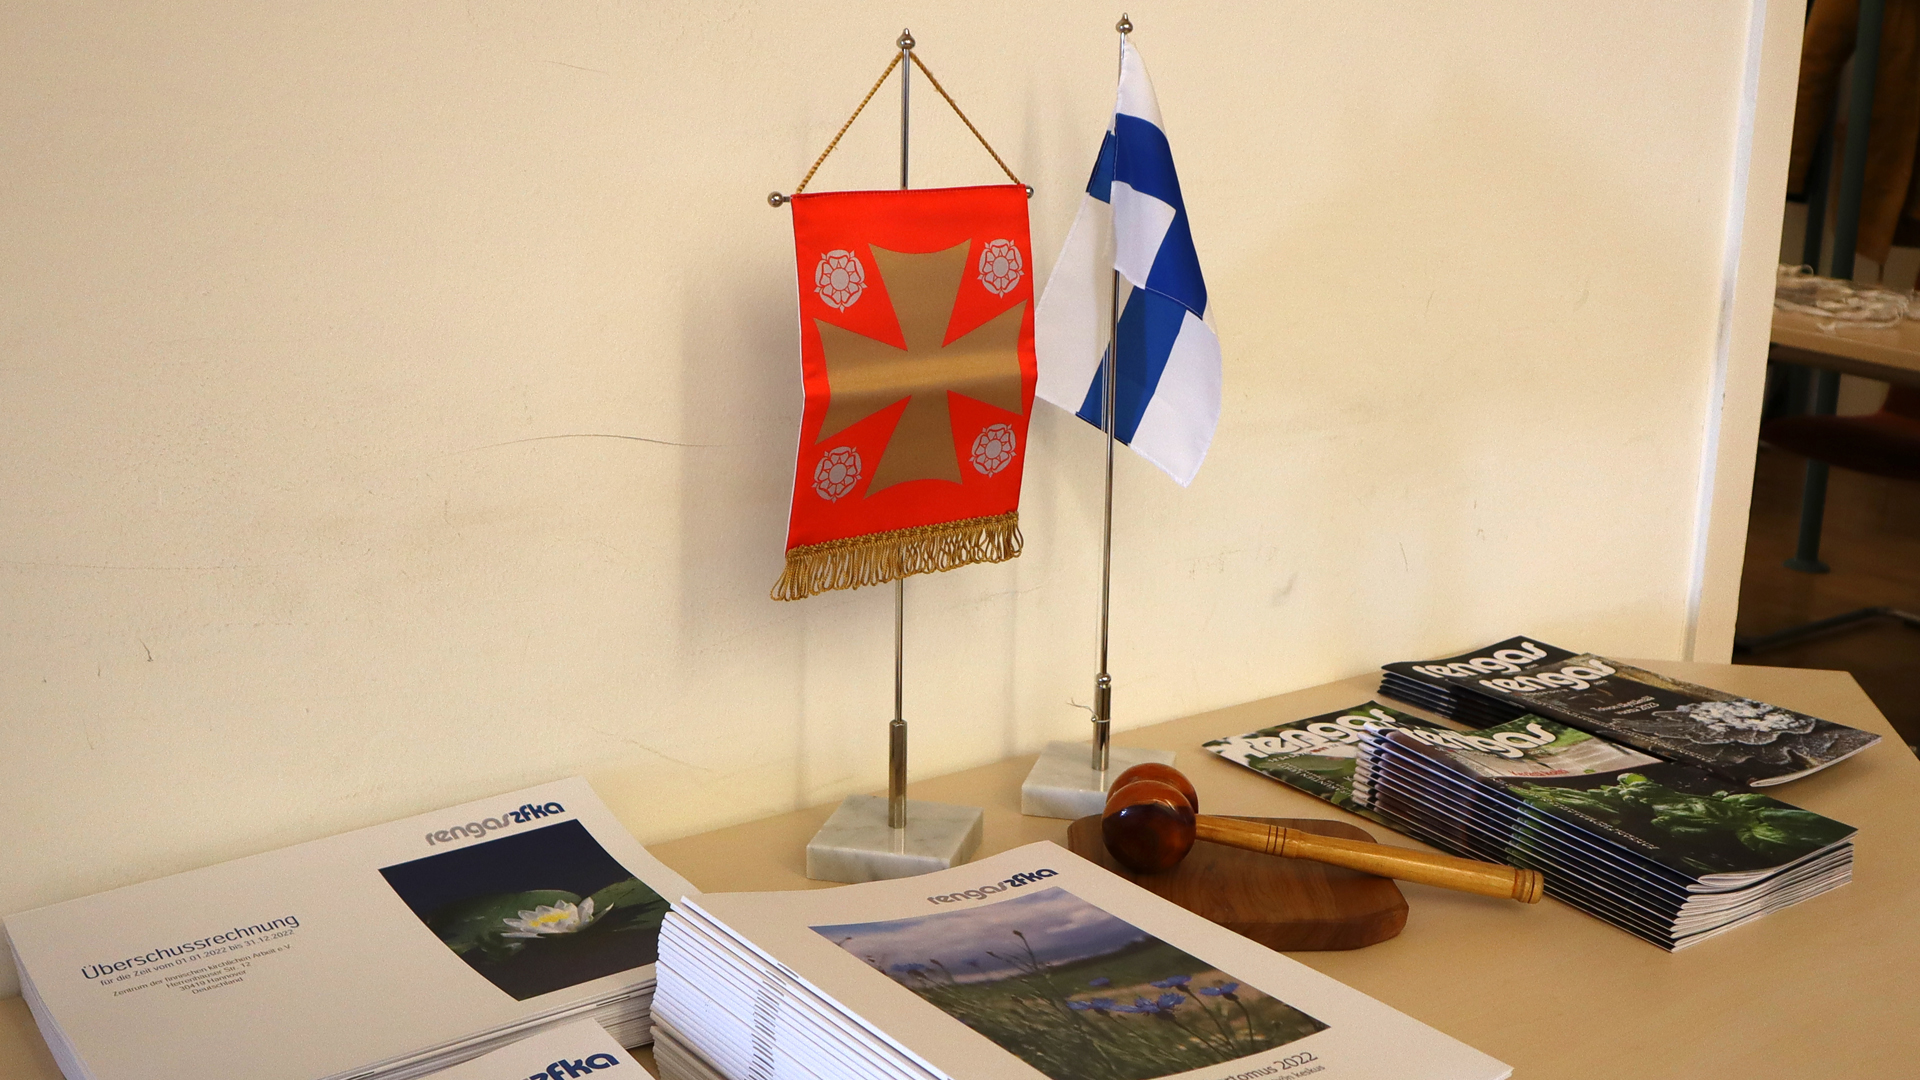 Suomen ja kirkon liput, puheenjohtajan nuija ja lehtiä pöydällä